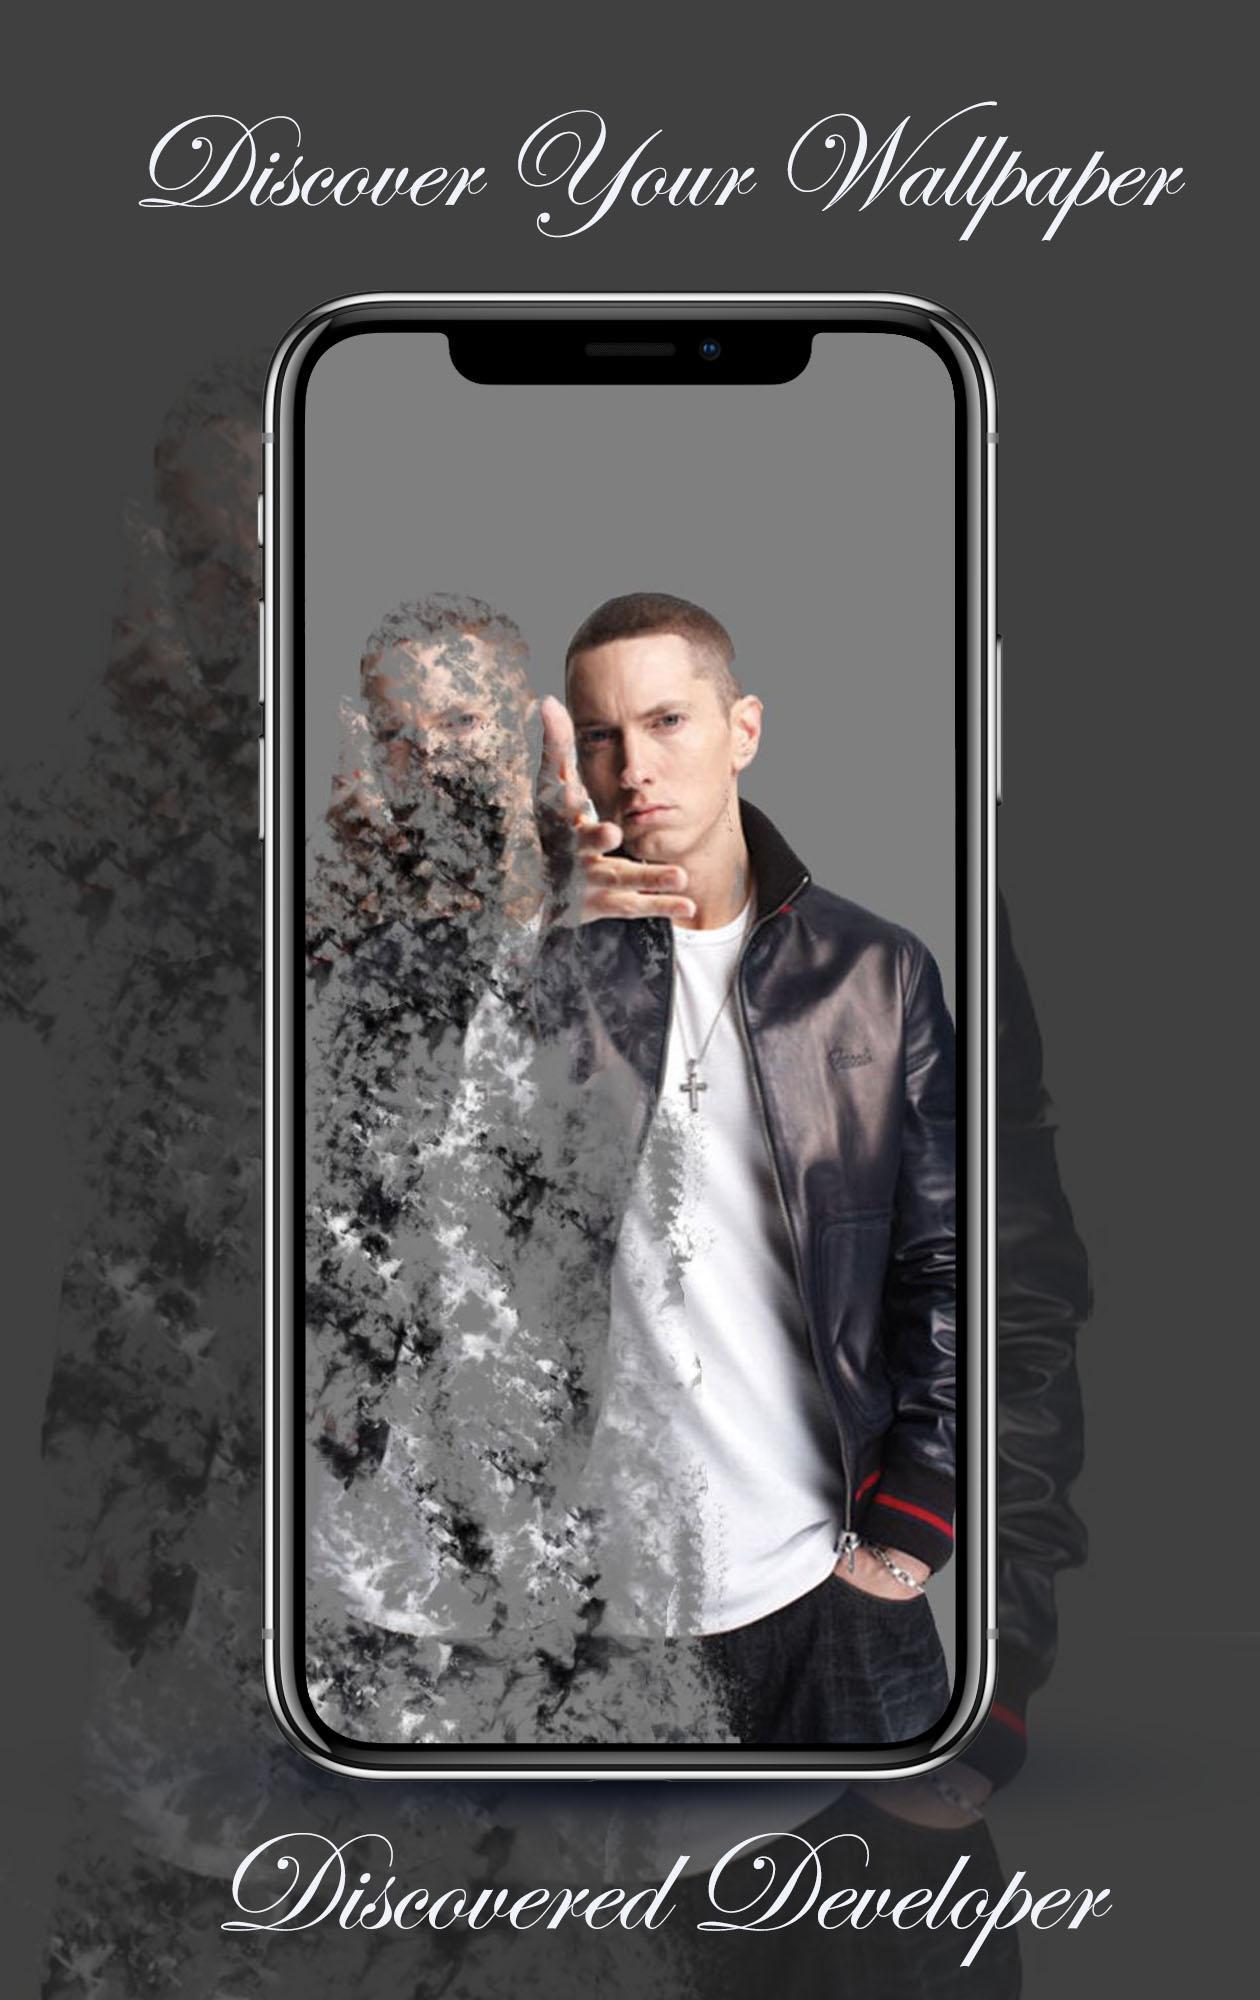 Eminem Wallpaper Hd 4k For Android Apk Download